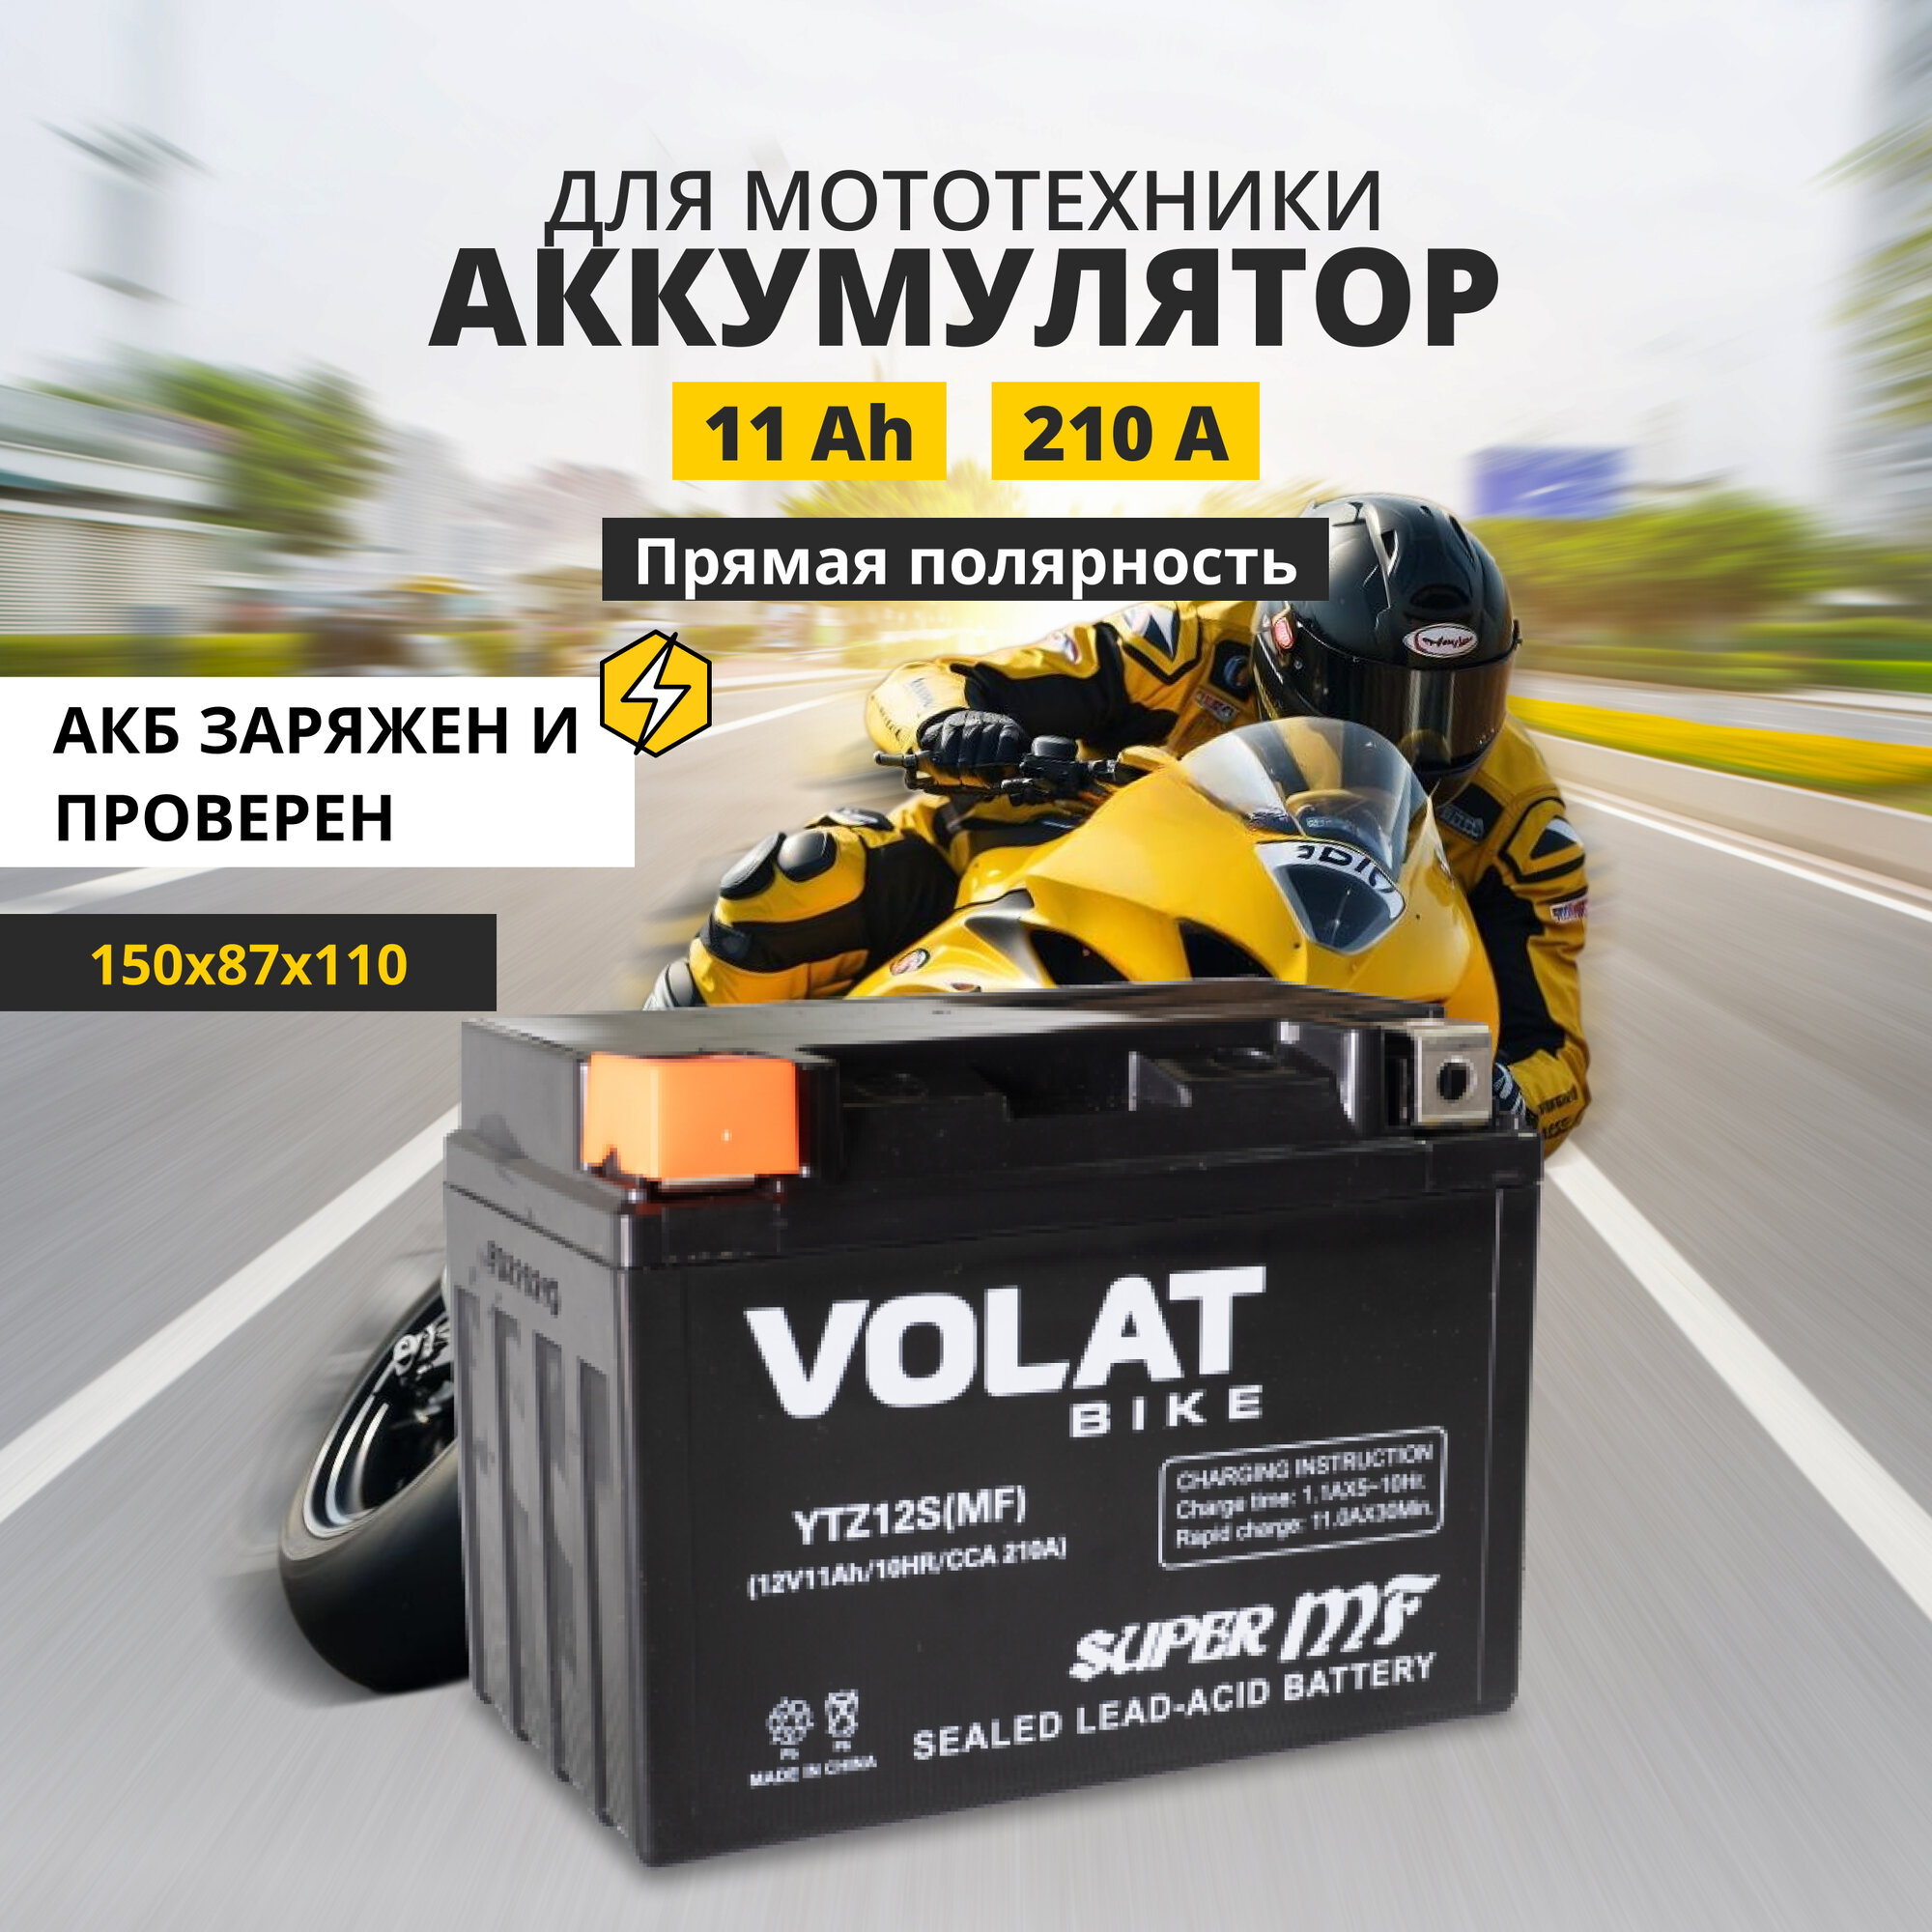 Аккумулятор для мотоцикла 12v Volat YTZ12S(MF) прямая полярность 11 Ah 210 A AGM, акб на скутер, мопед, квадроцикл 150x87x110 мм